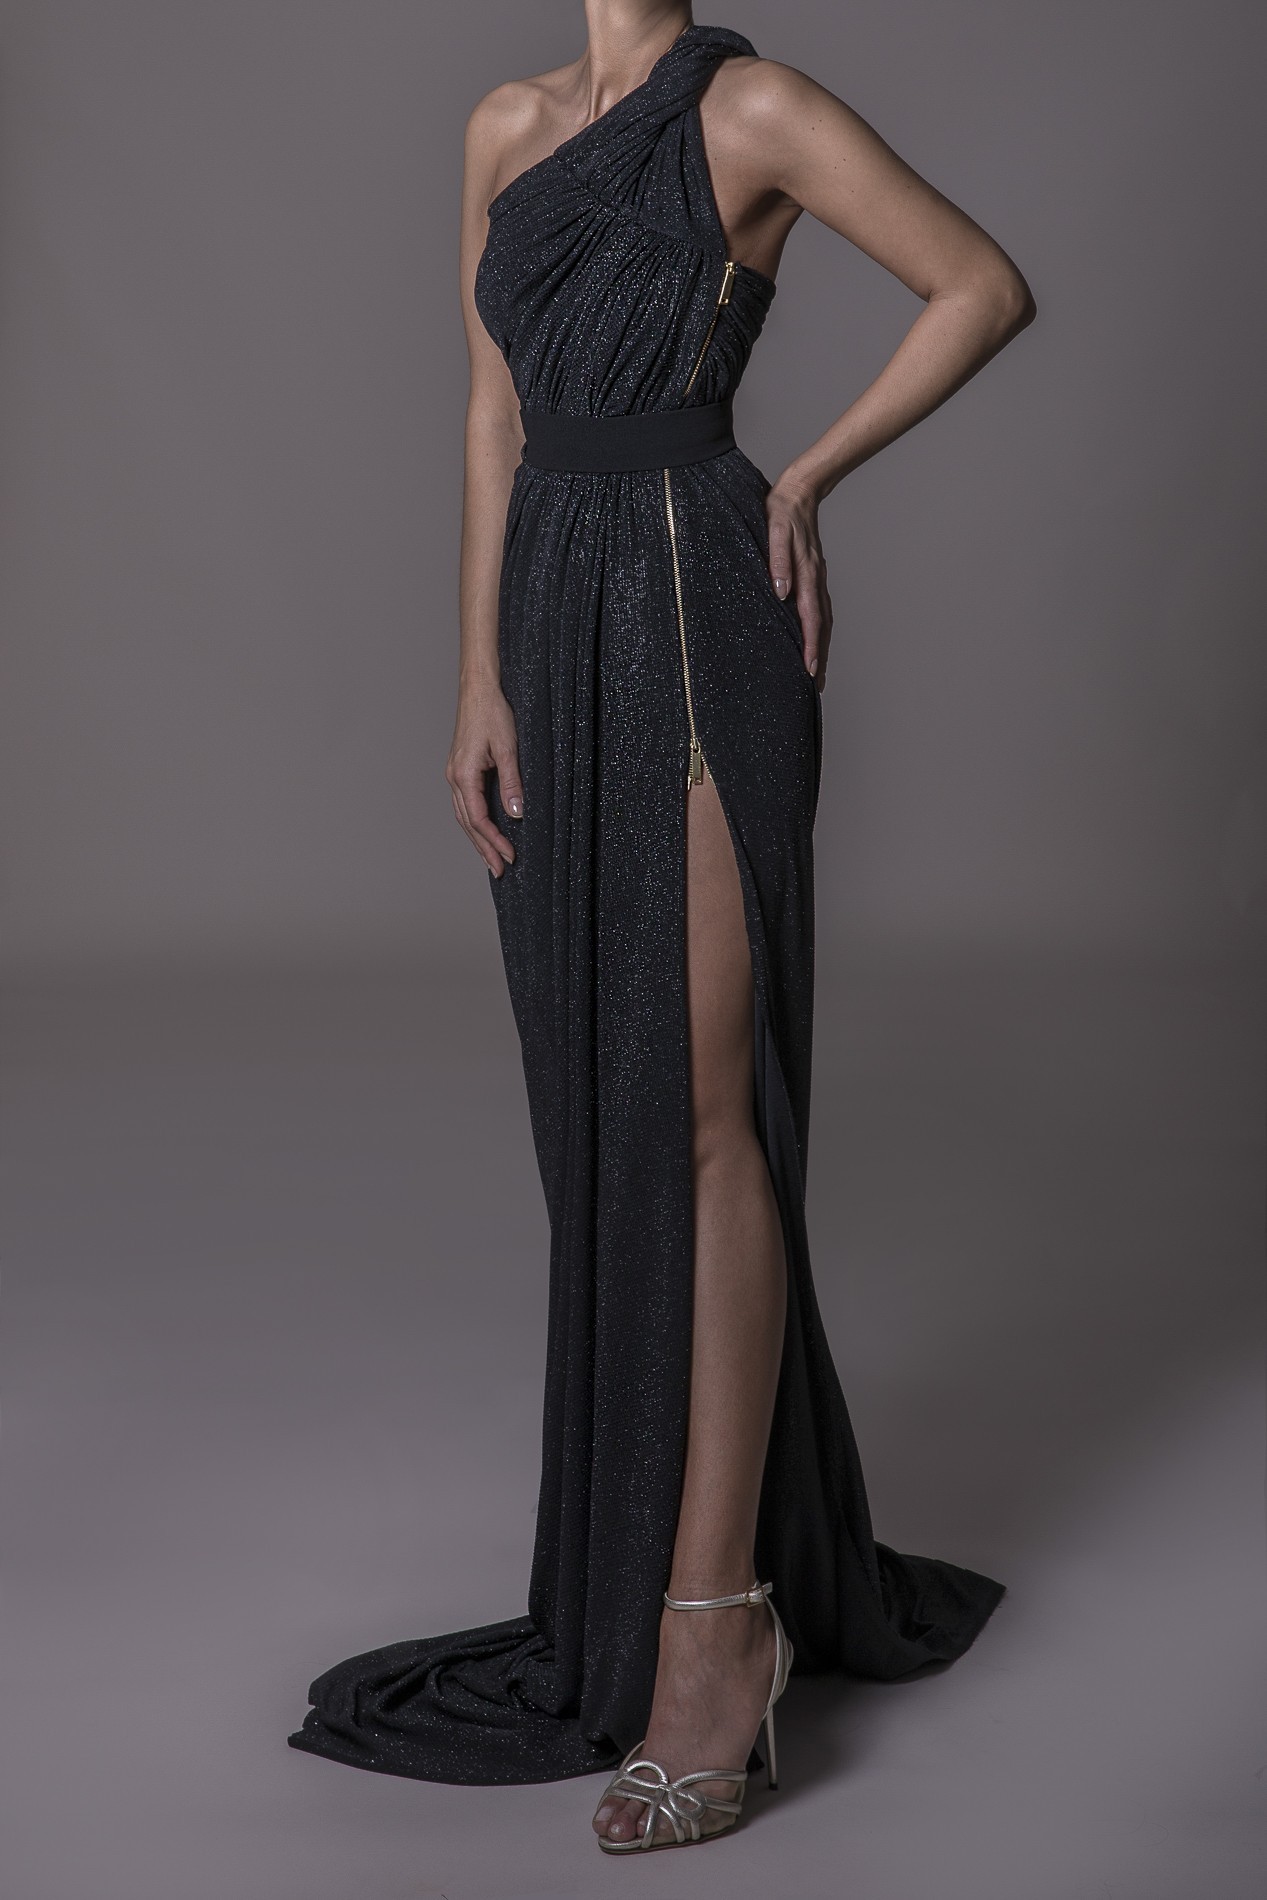 Rhea Costa Abito Side Metallic Zipper Gown 20113DLG - Nuova Collezione Primavera Estate 2020